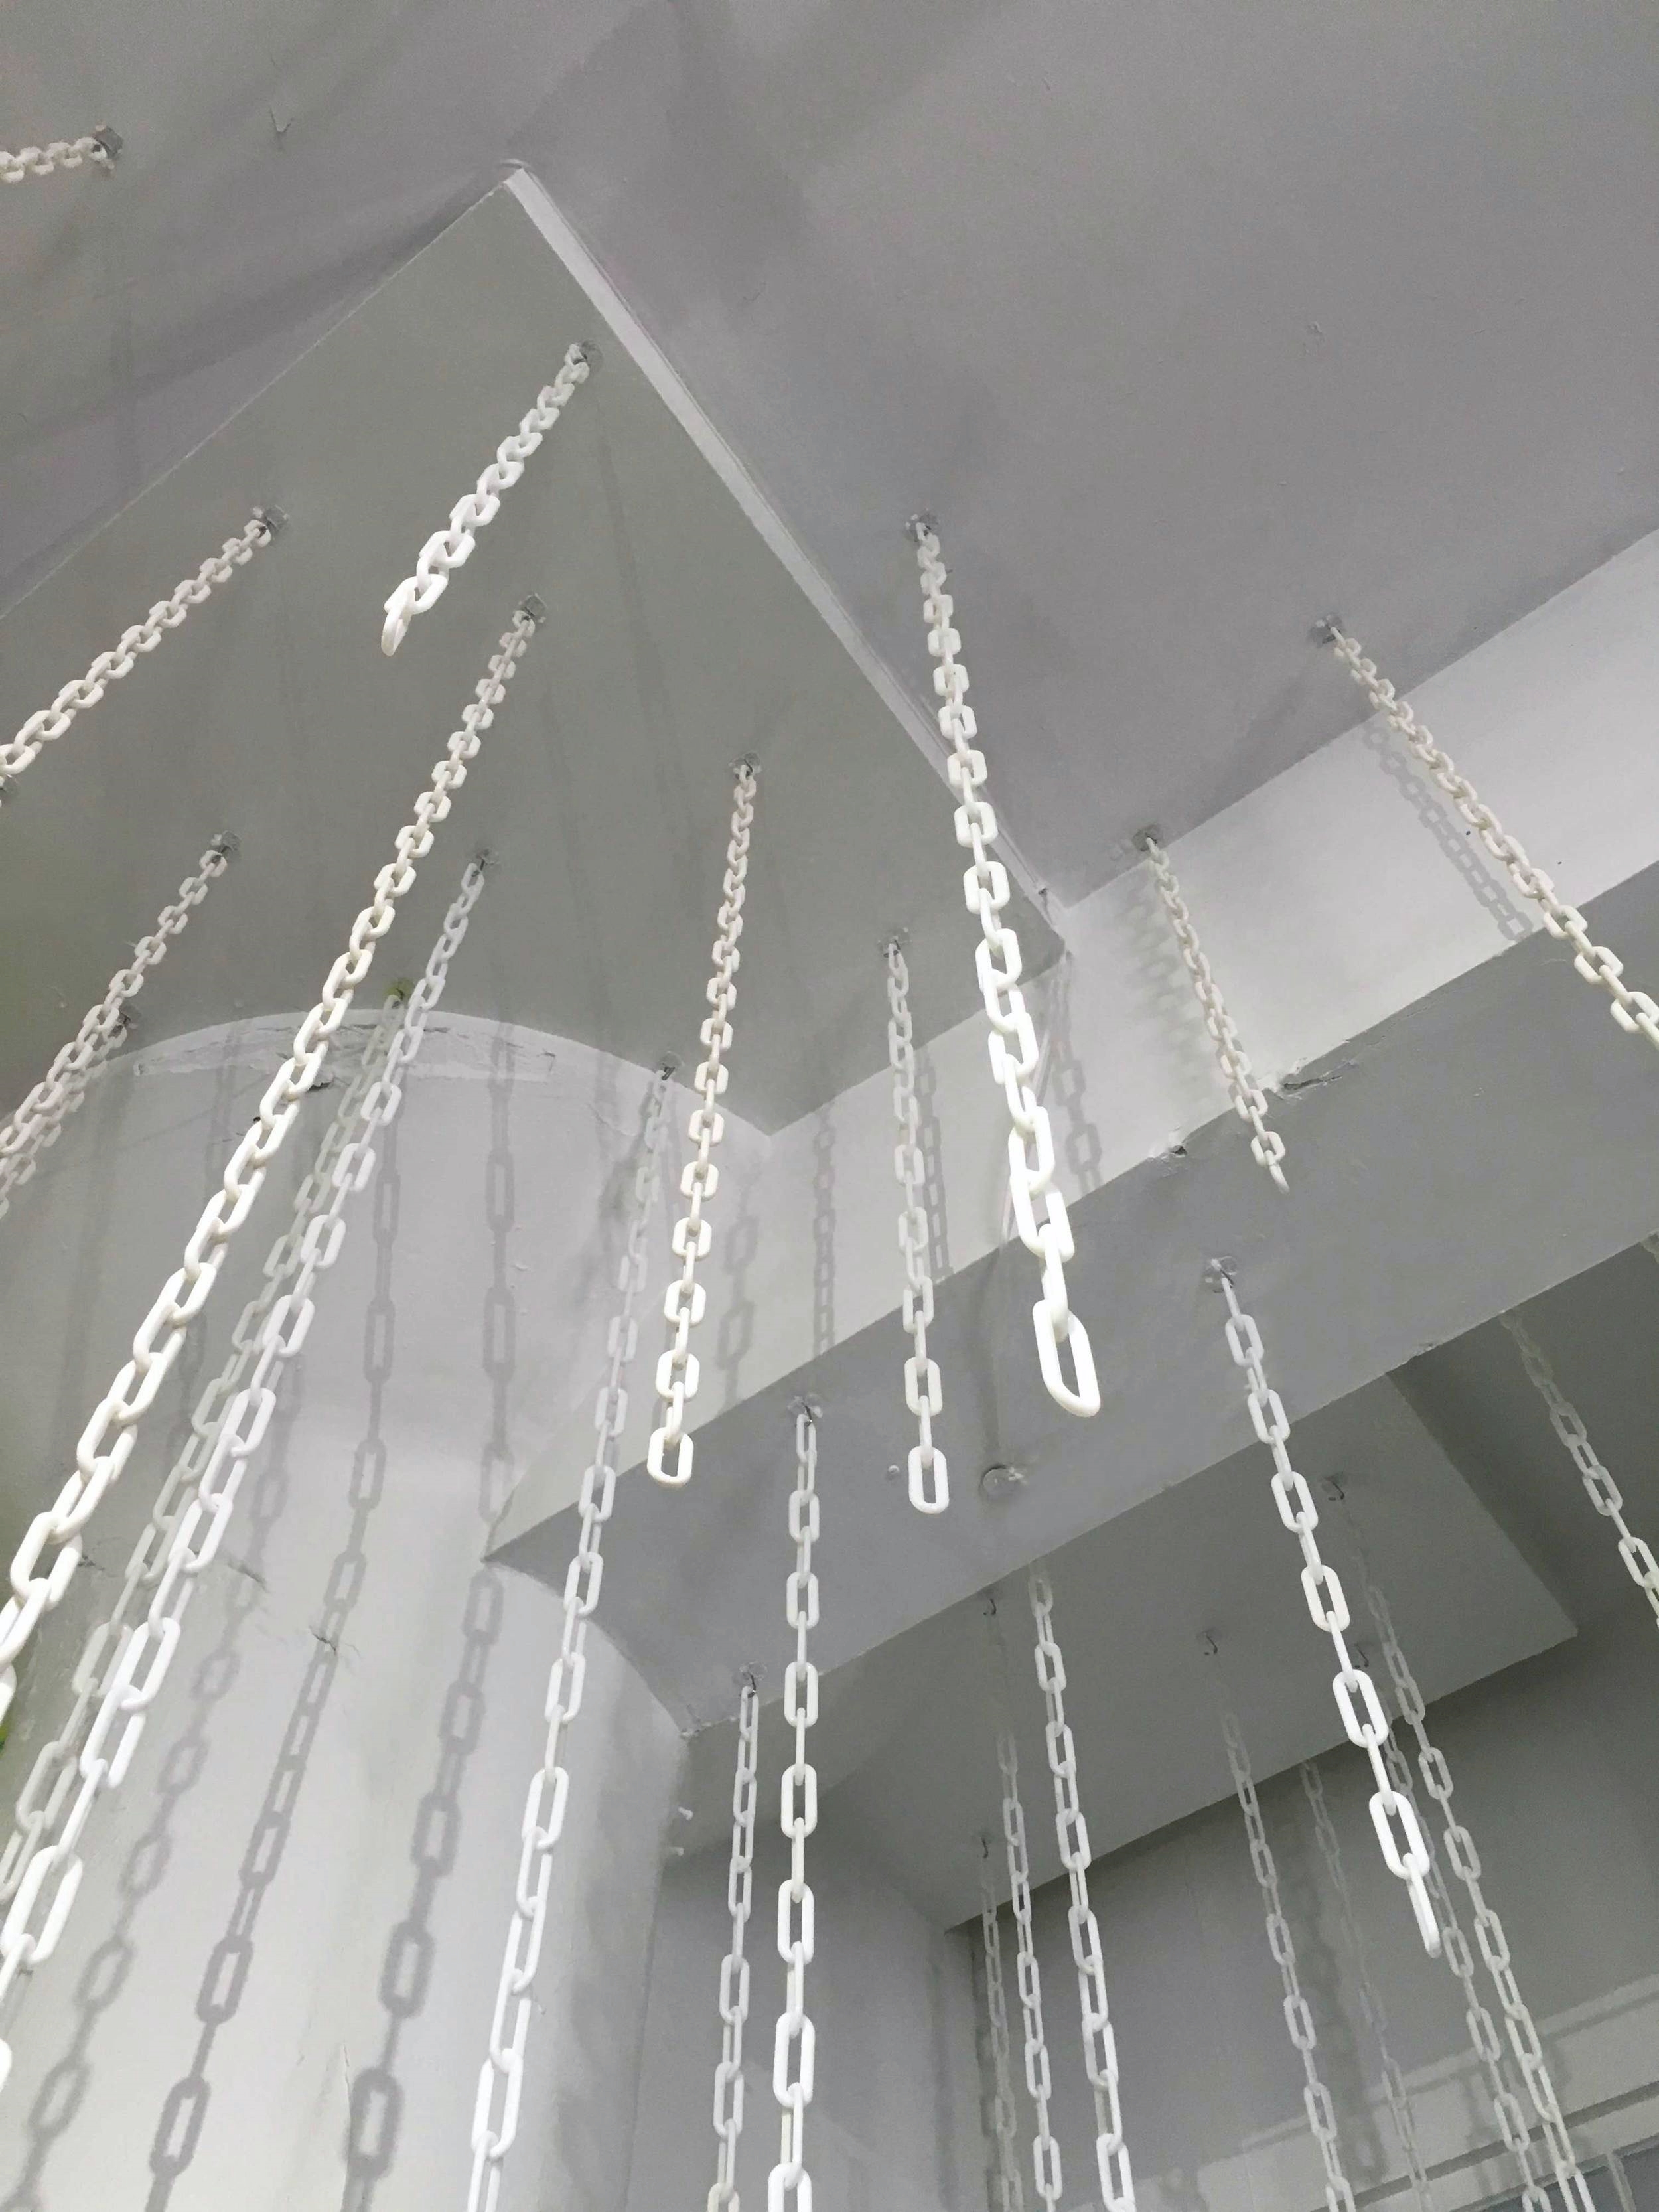 white-chains-ceiling.jpg